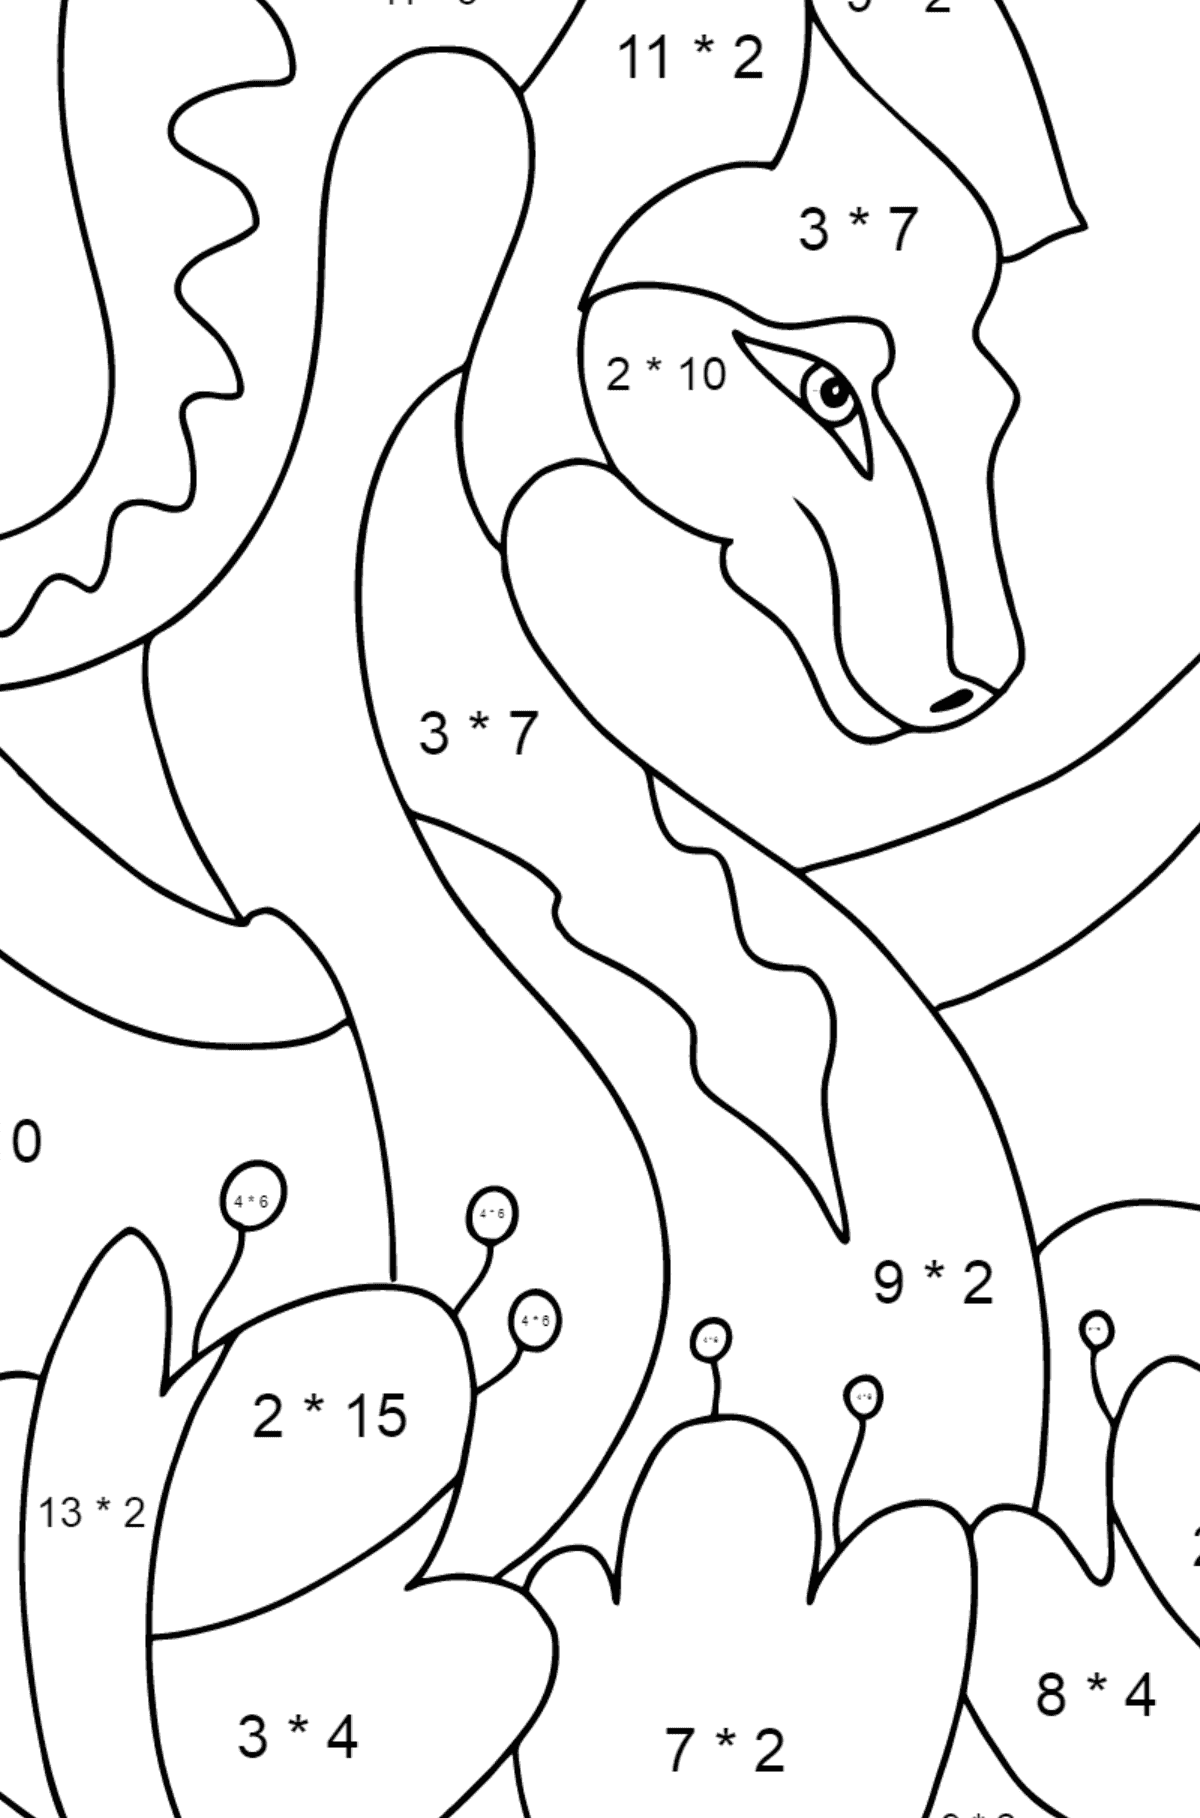 Dibujo para colorear dragón colorido (difícil) - Colorear con Matemáticas - Multiplicaciones para Niños